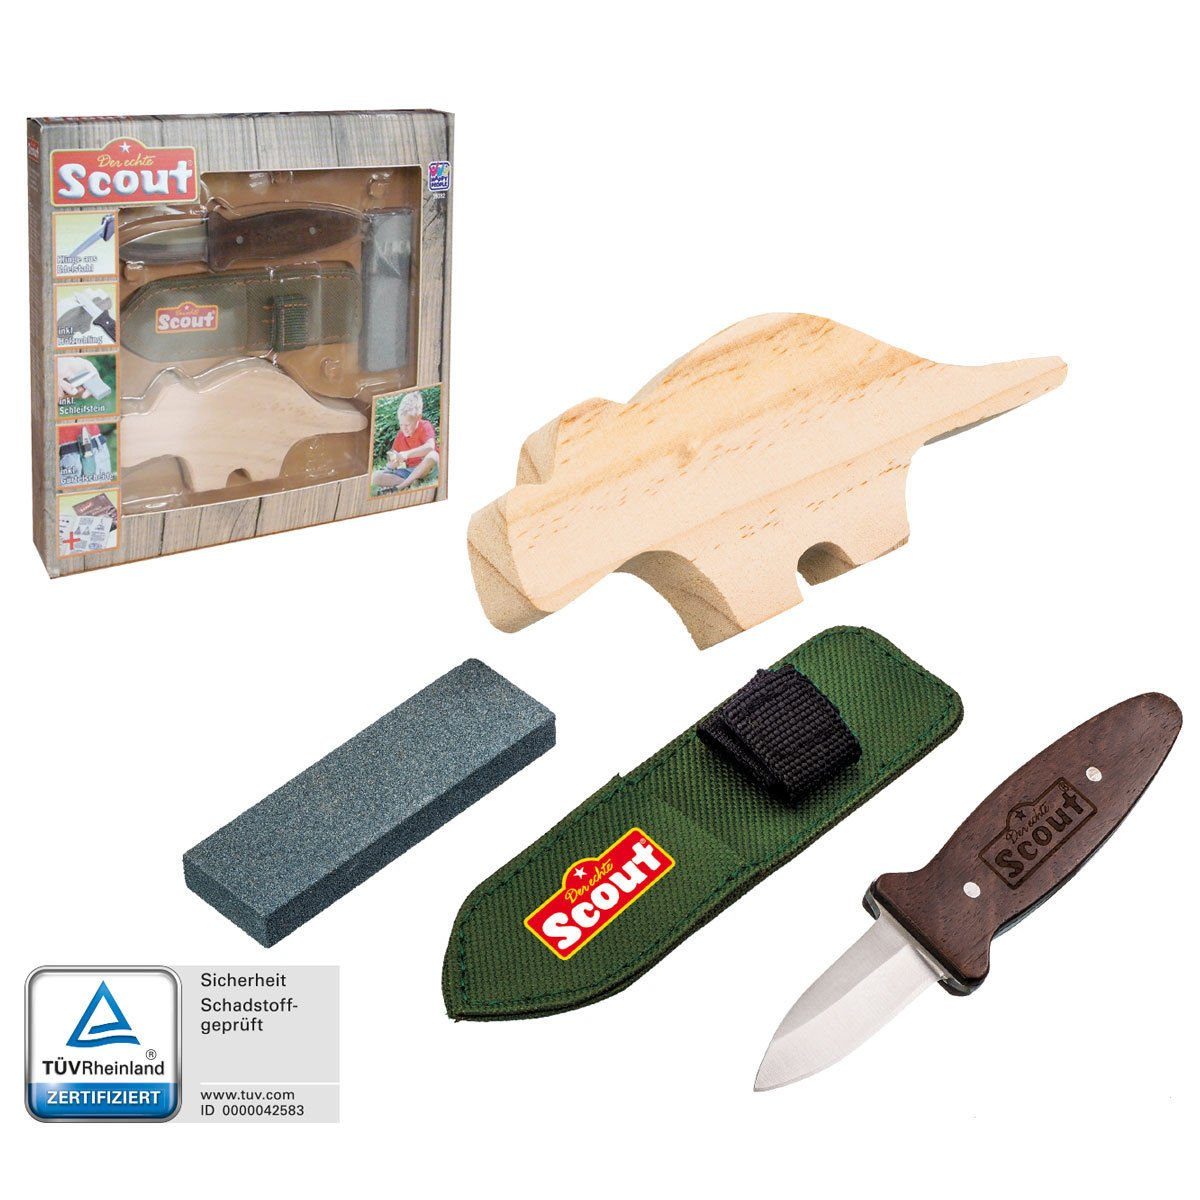 Scout Taschenmesser Schnitzset Schnitzmesser Kindermesser, Kinder Messer & Schleifstein | Taschenmesser